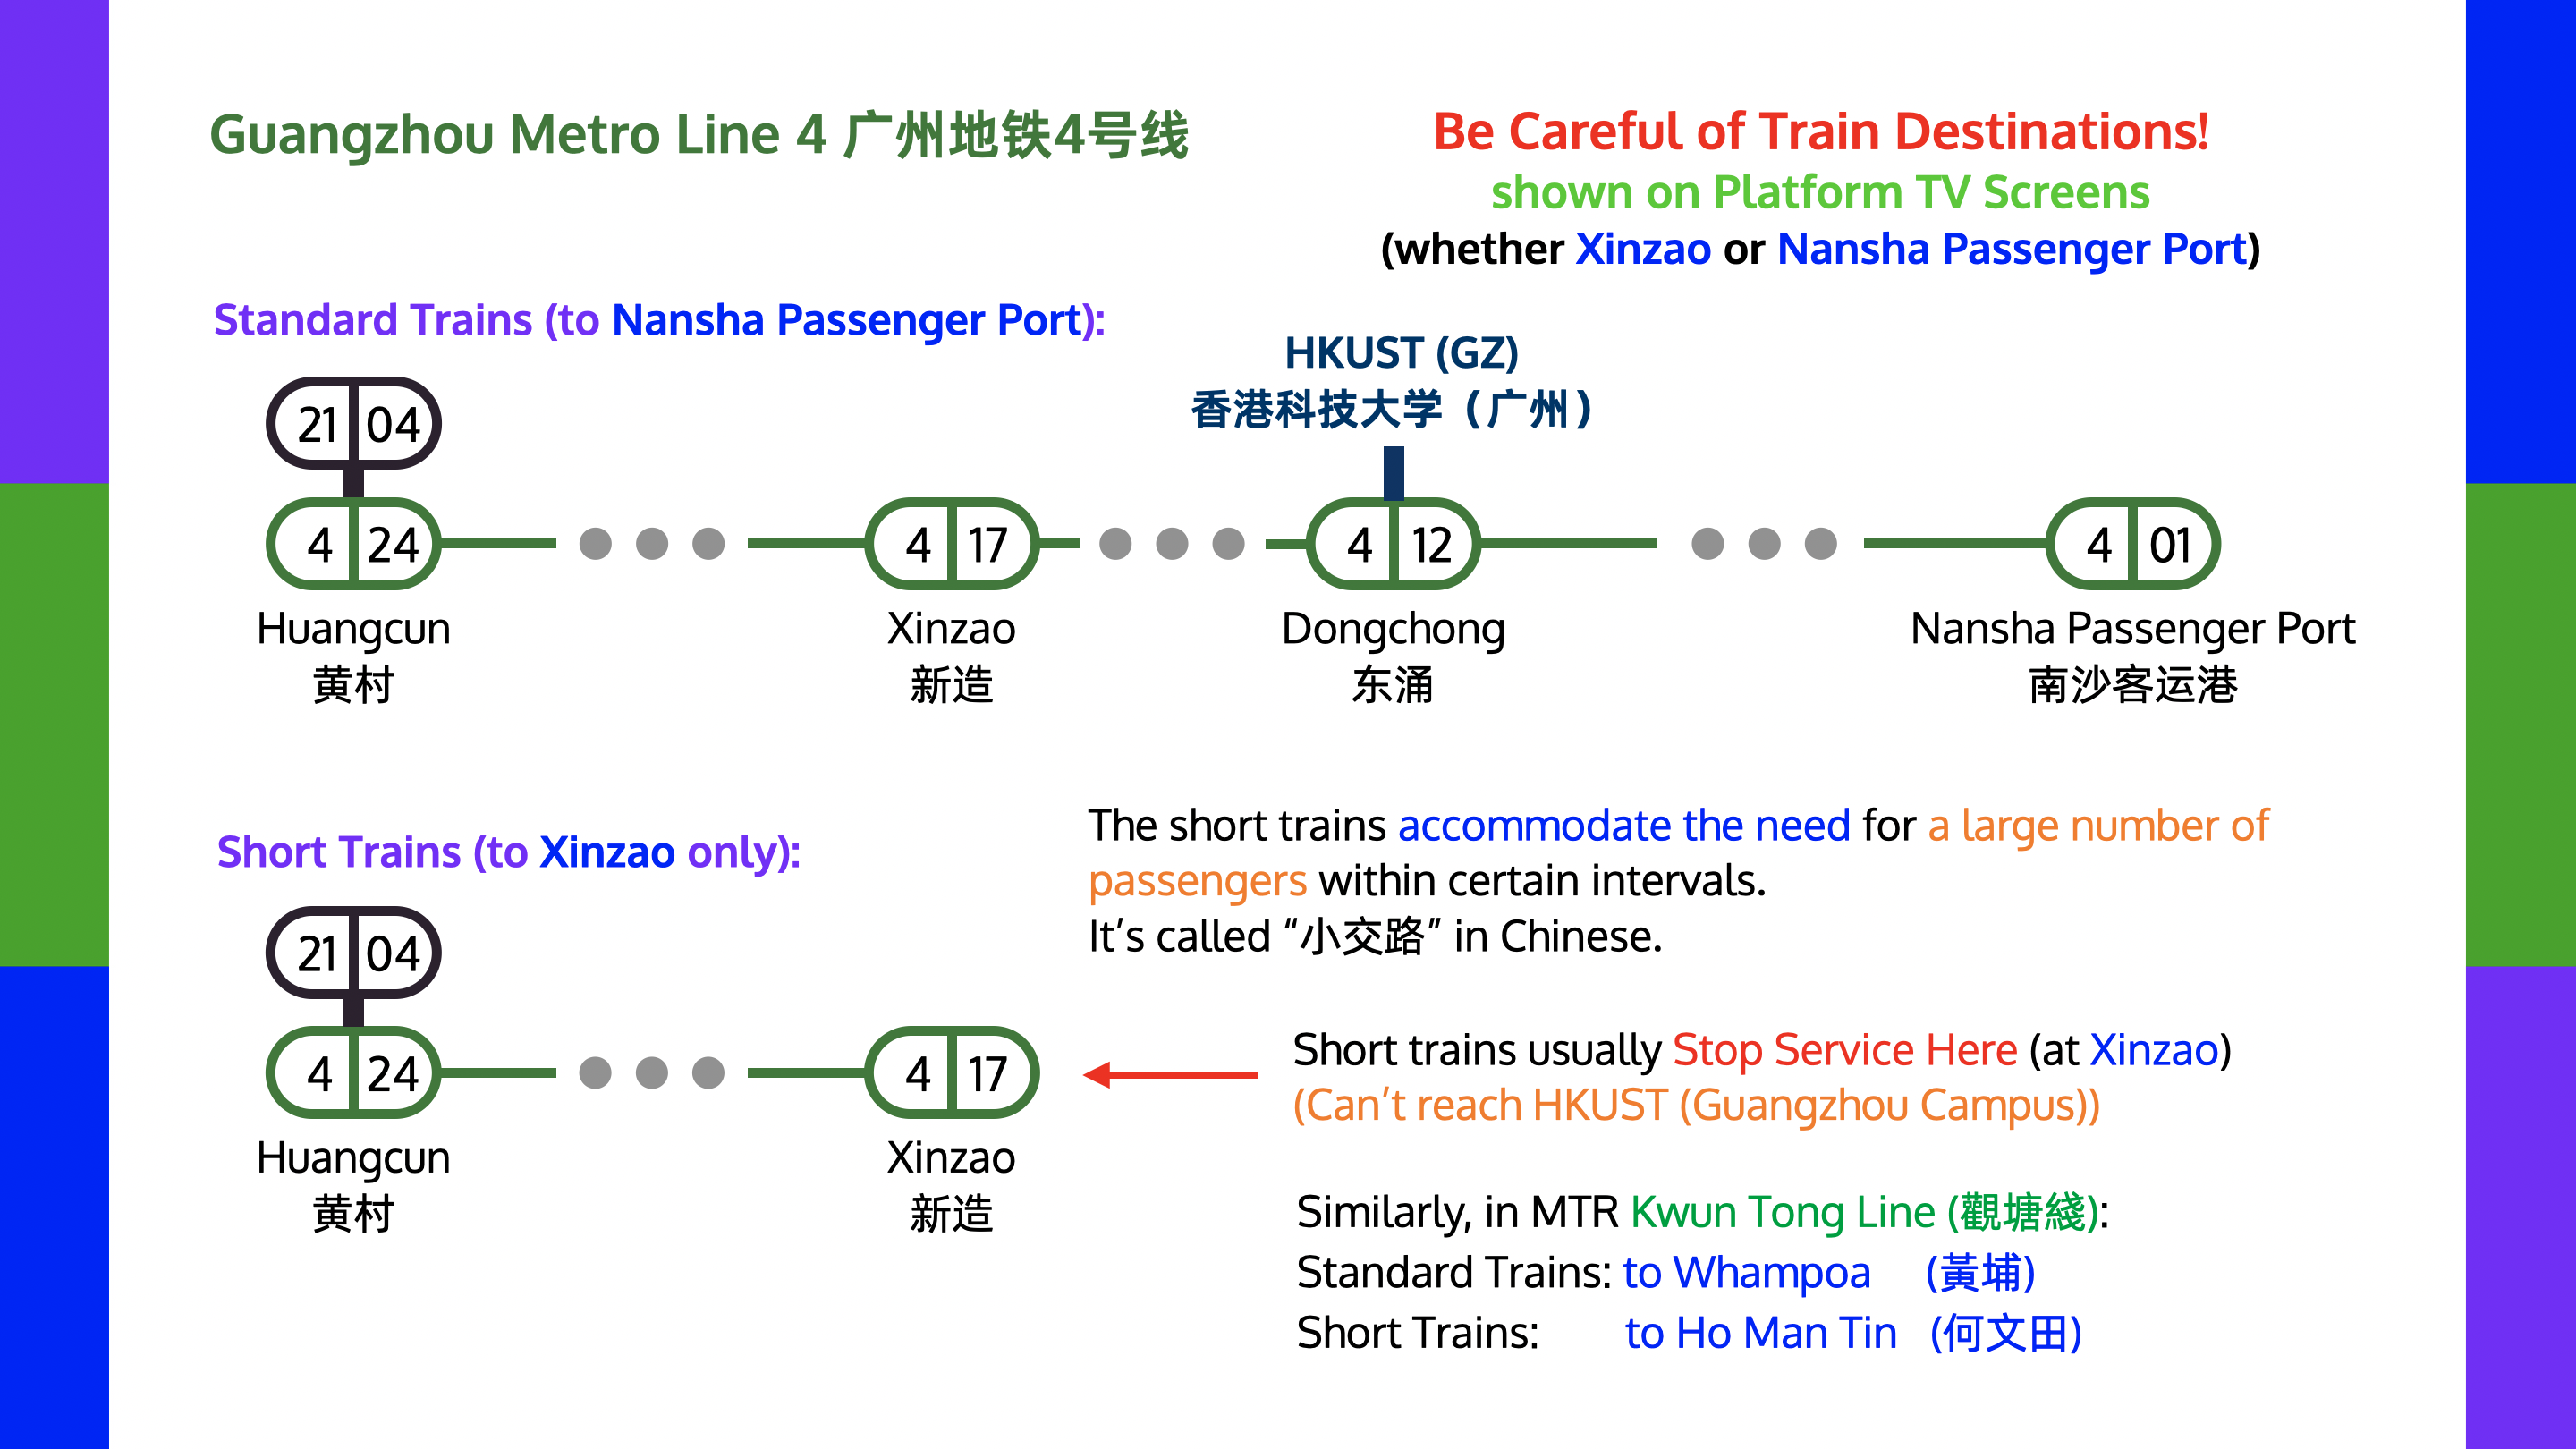 Short Trains (to Xinzao) in Guangzhou Metro Line 4